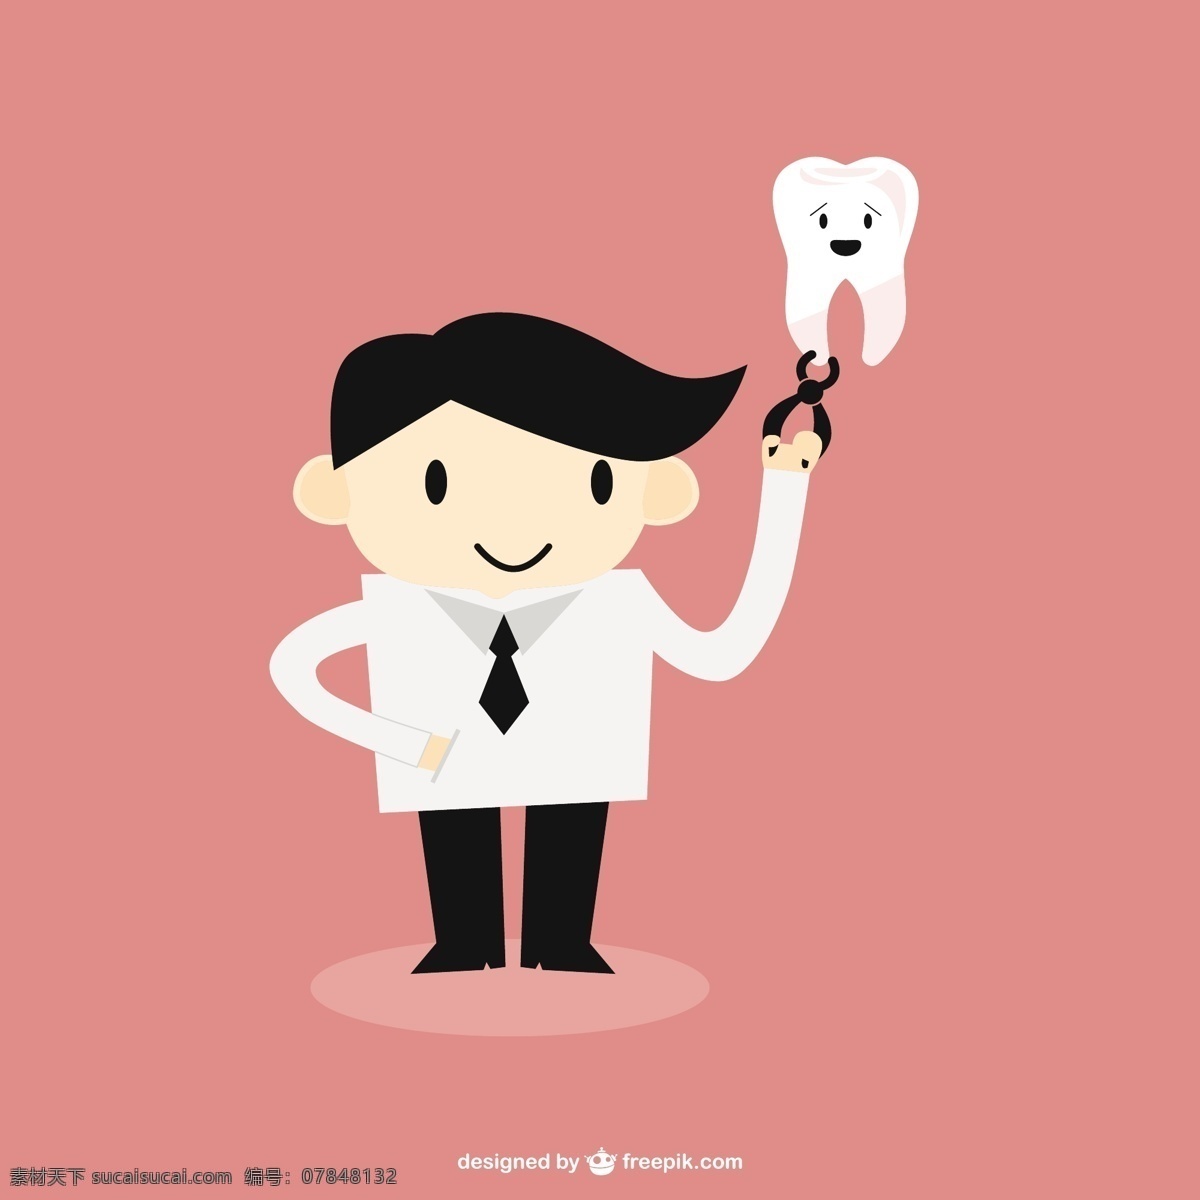 牙医的牙齿 医学 男人 健康 卡通 医生 性格 可爱 牙科 牙医 牙齿 卡通人物 插图 护理 疼痛 医疗 粉色